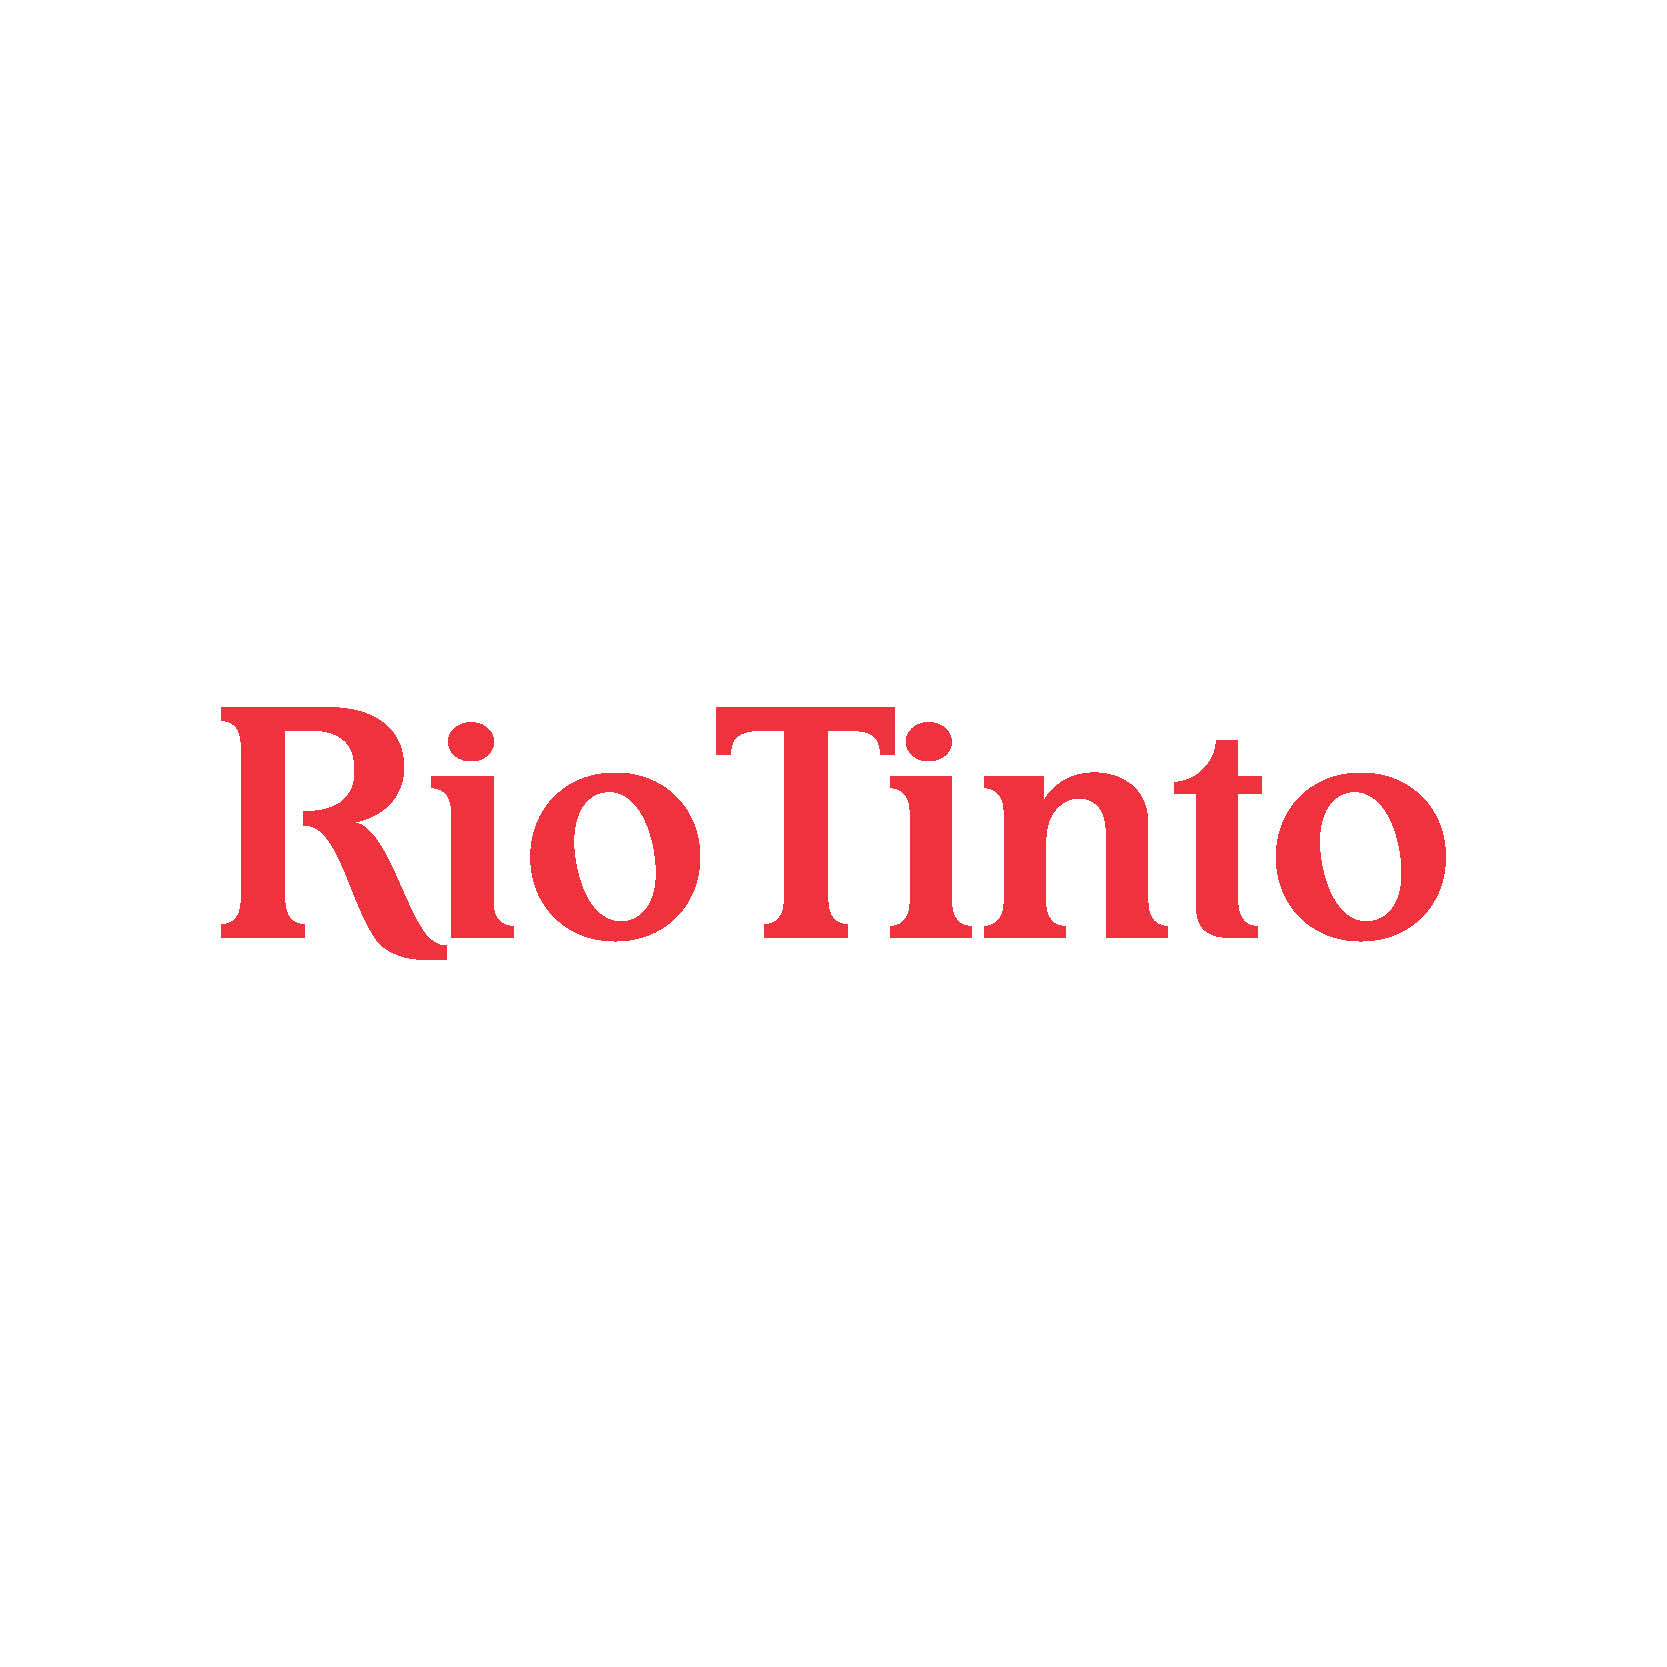 Rio Tinto shares